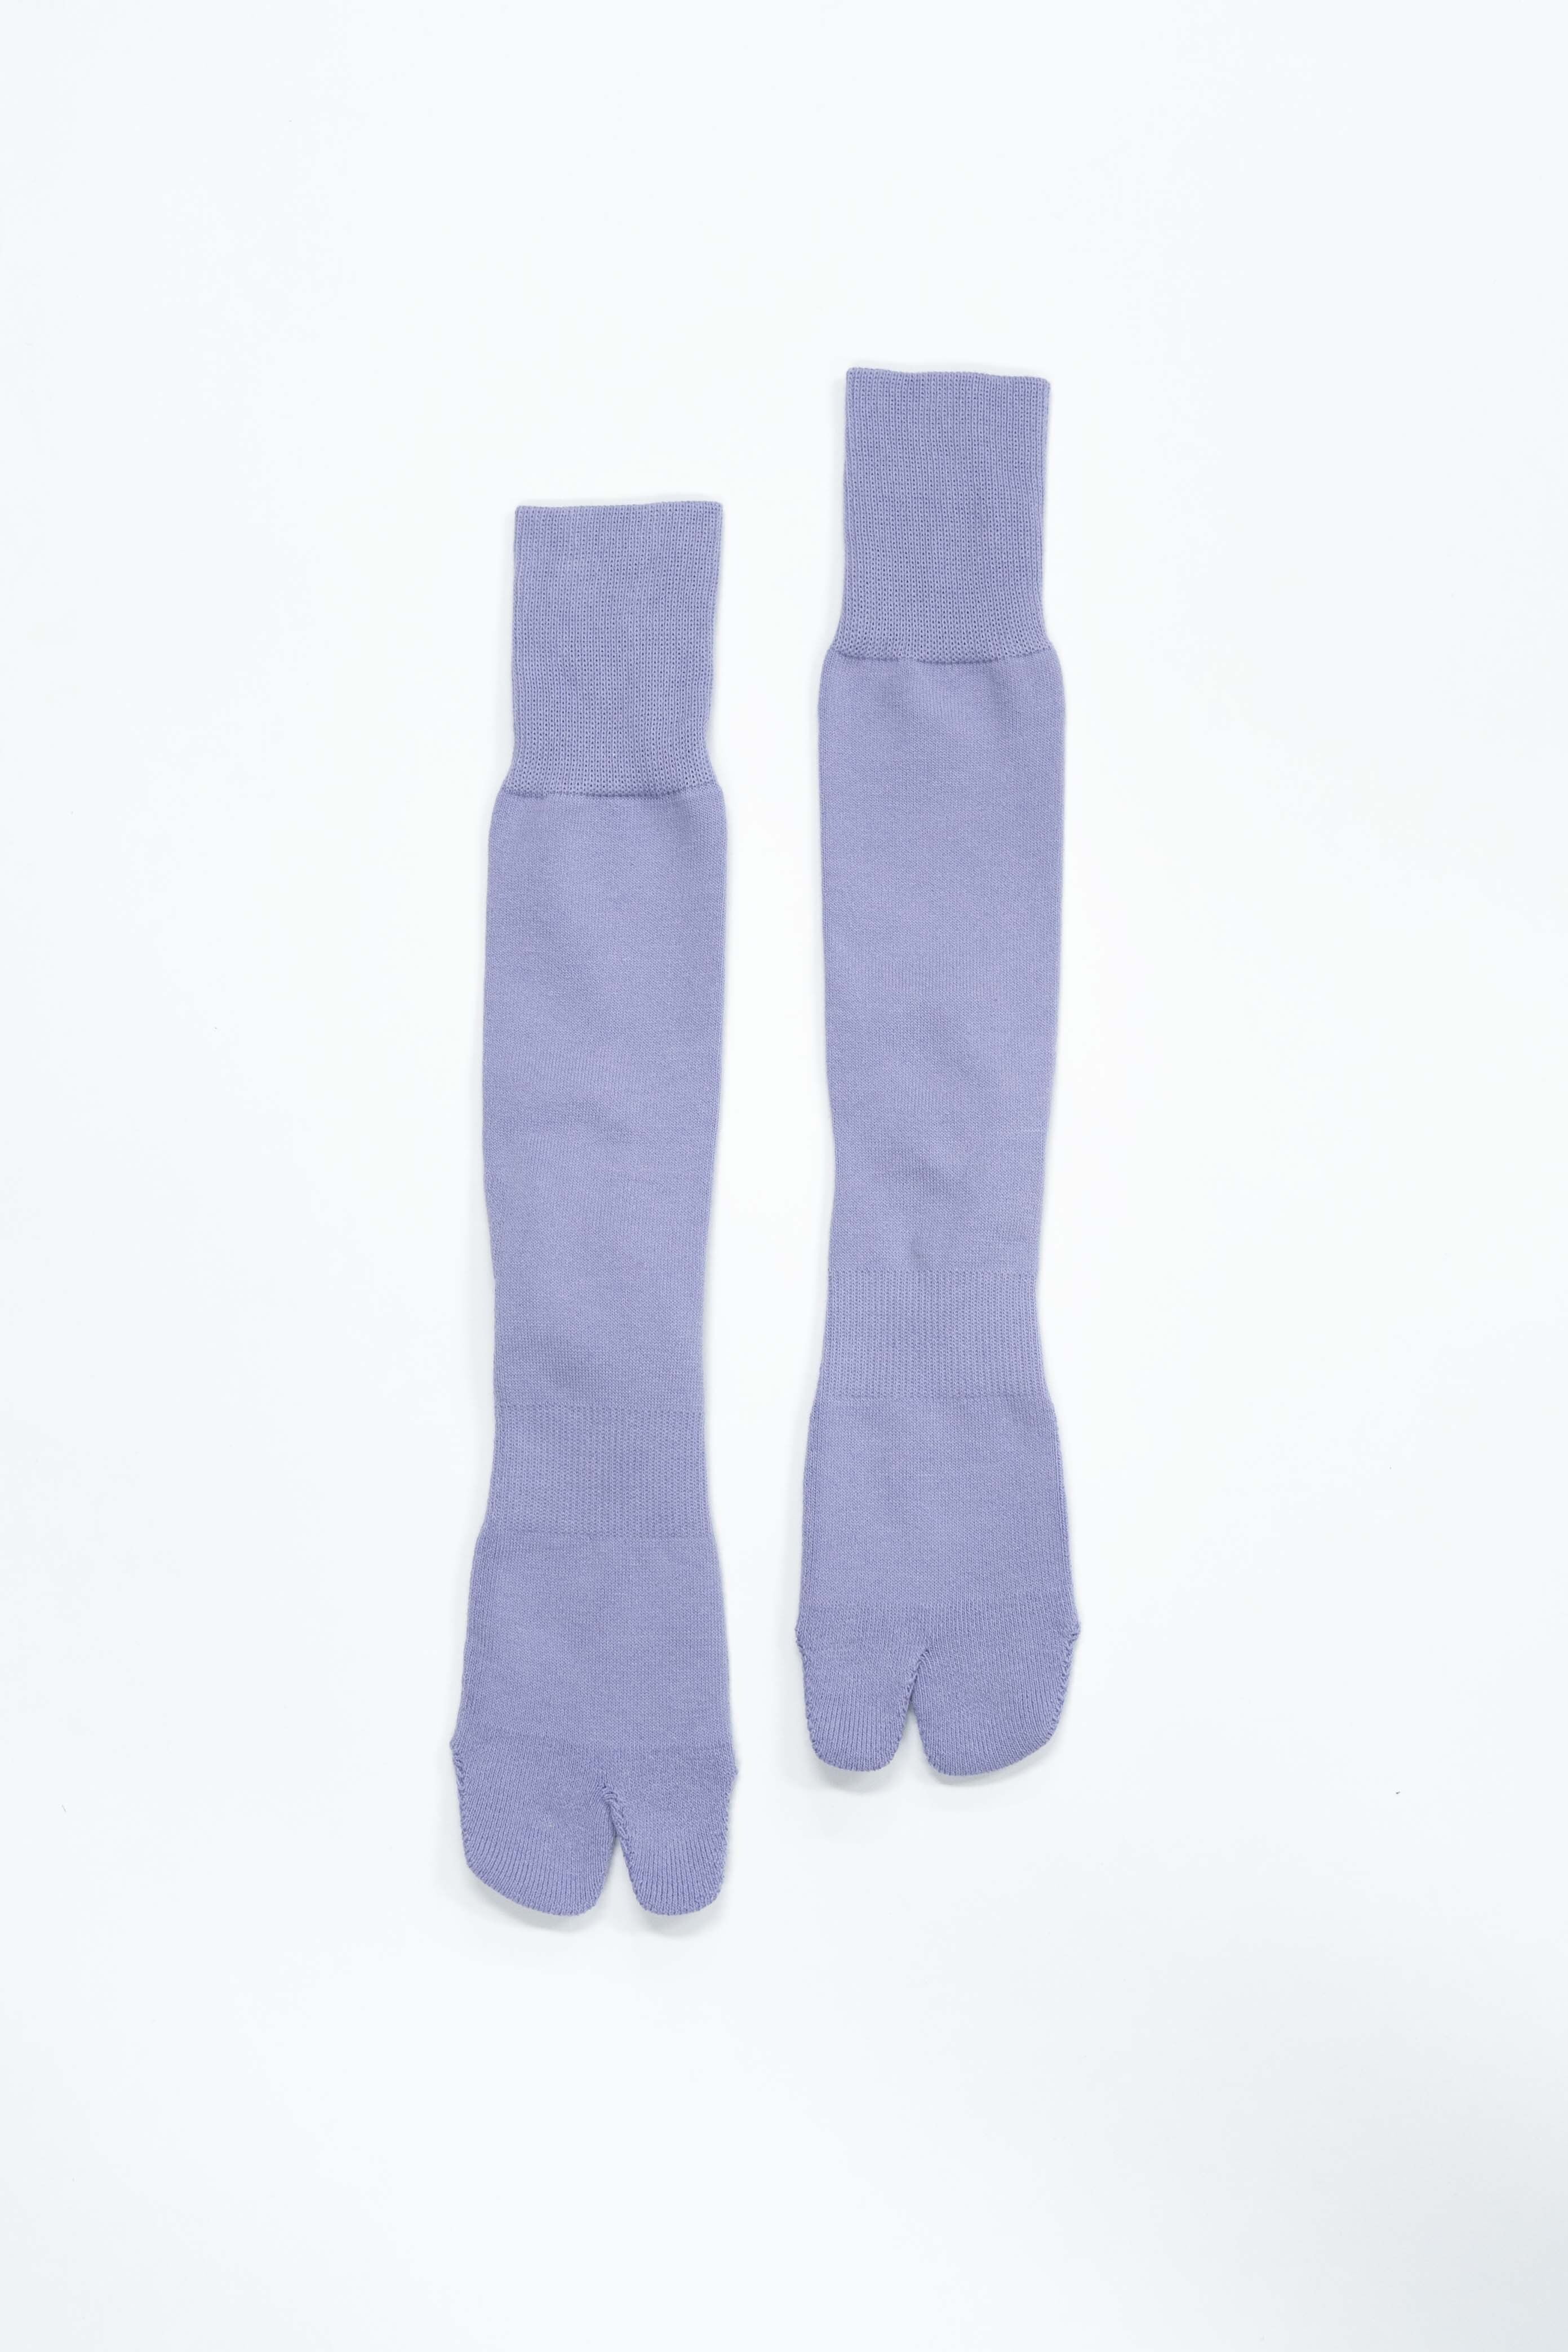 New Standard Socks(Purple)